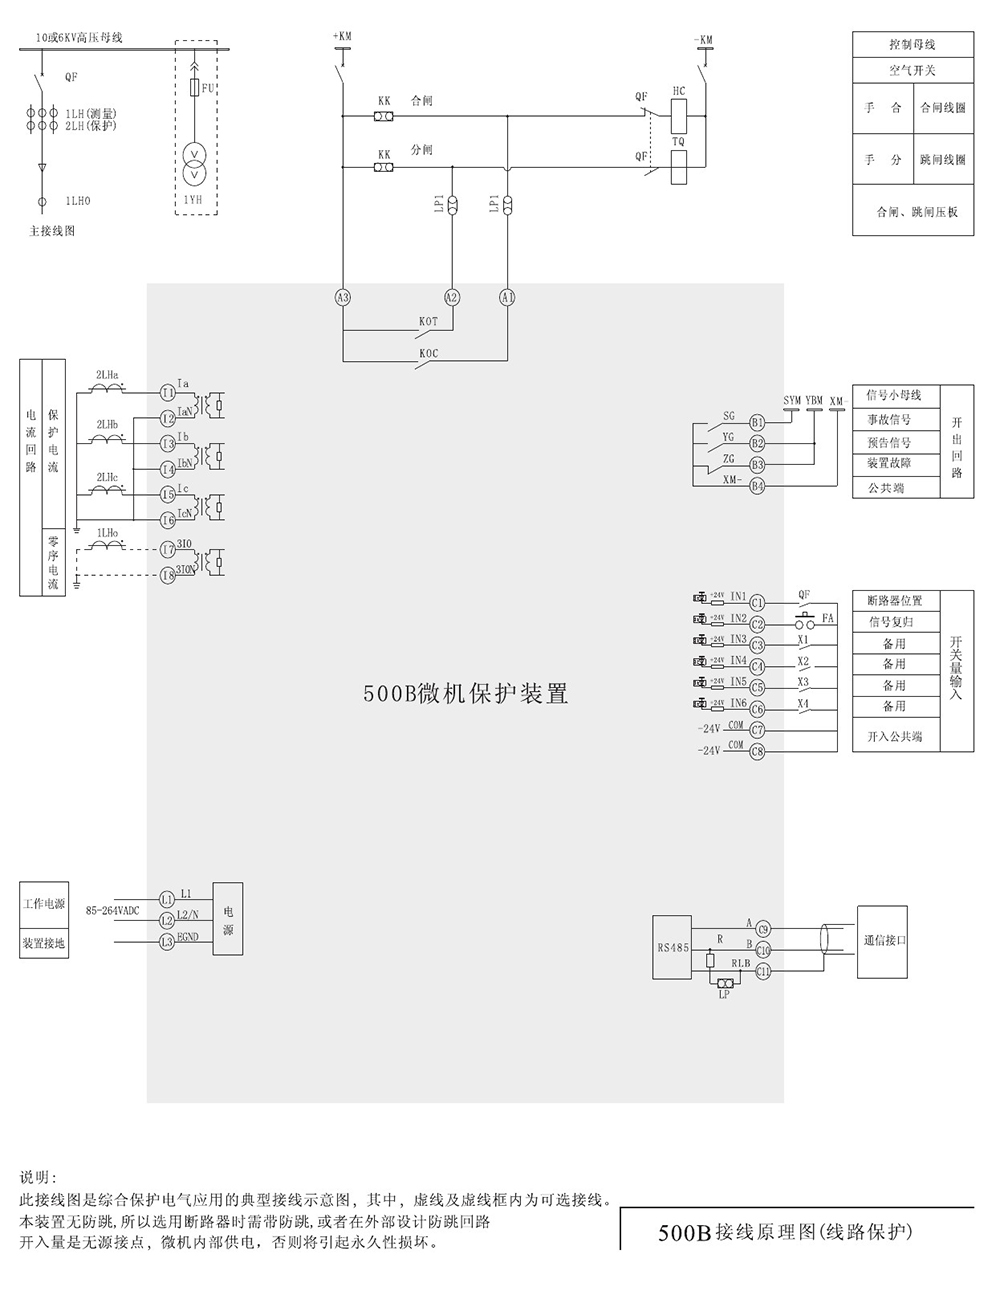 SJP-500B迷你微机保护装置产品参数图片一